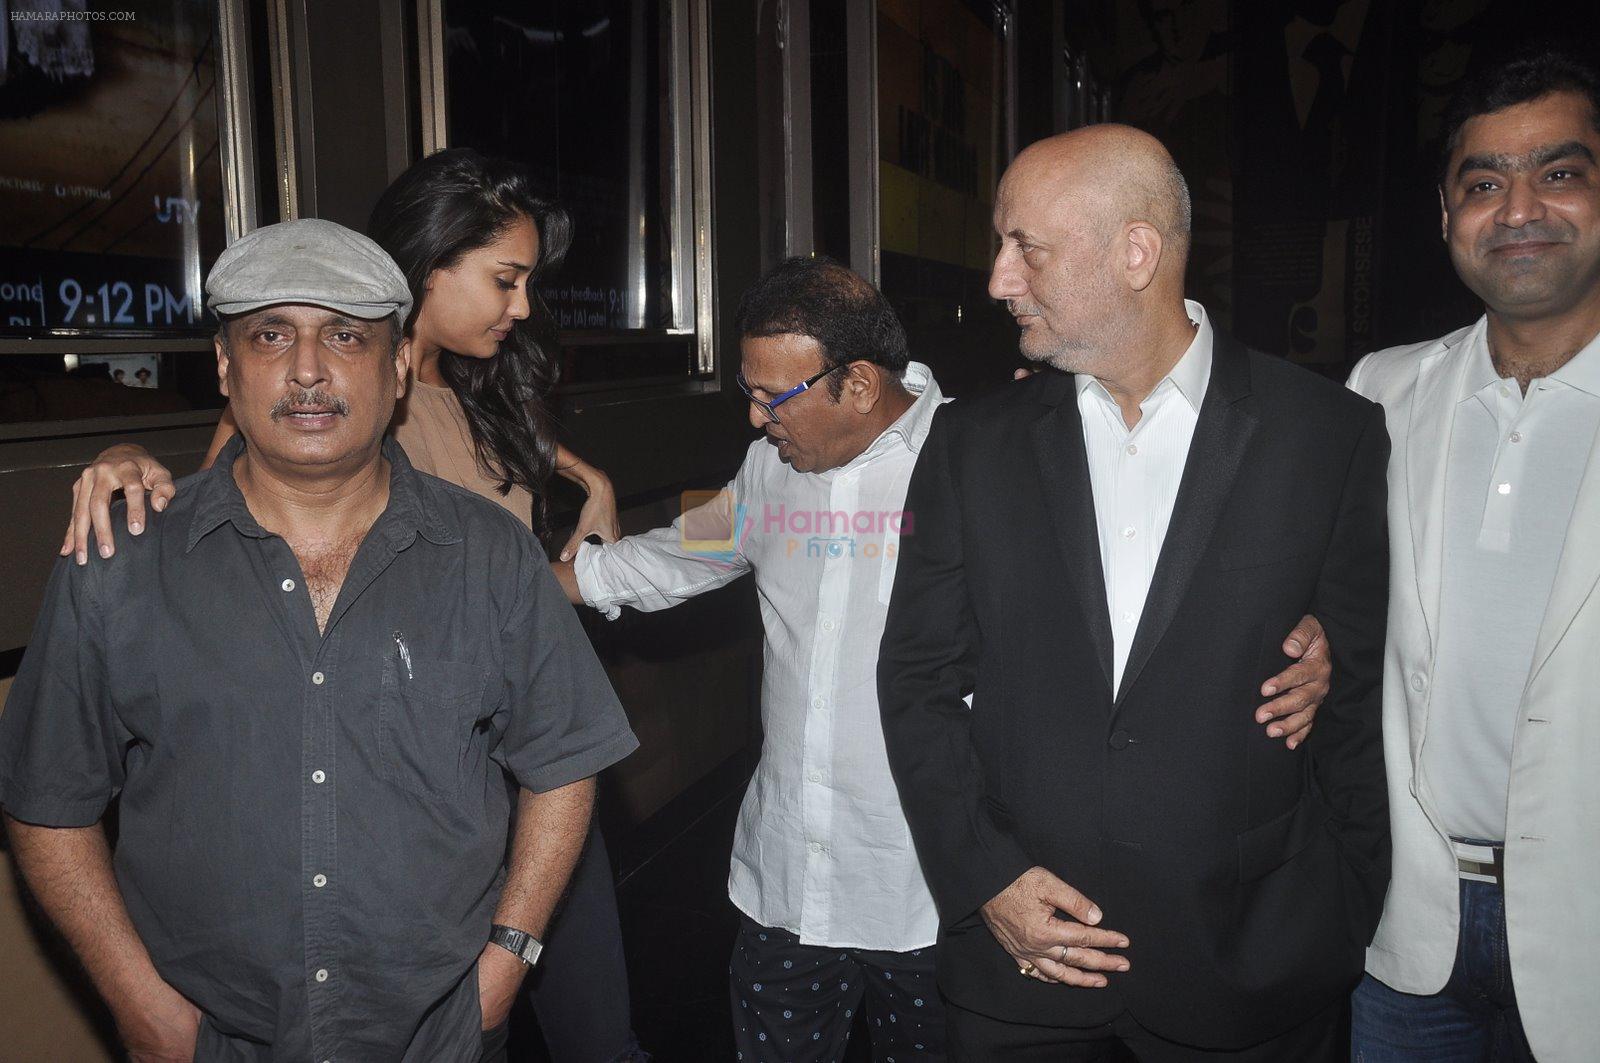 Anupam Kher, Annu Kapoor, Piyush Mishra, Lisa Haydon at The Shaukeens premiere in PVR, Mumbai on 6th Nov 2014